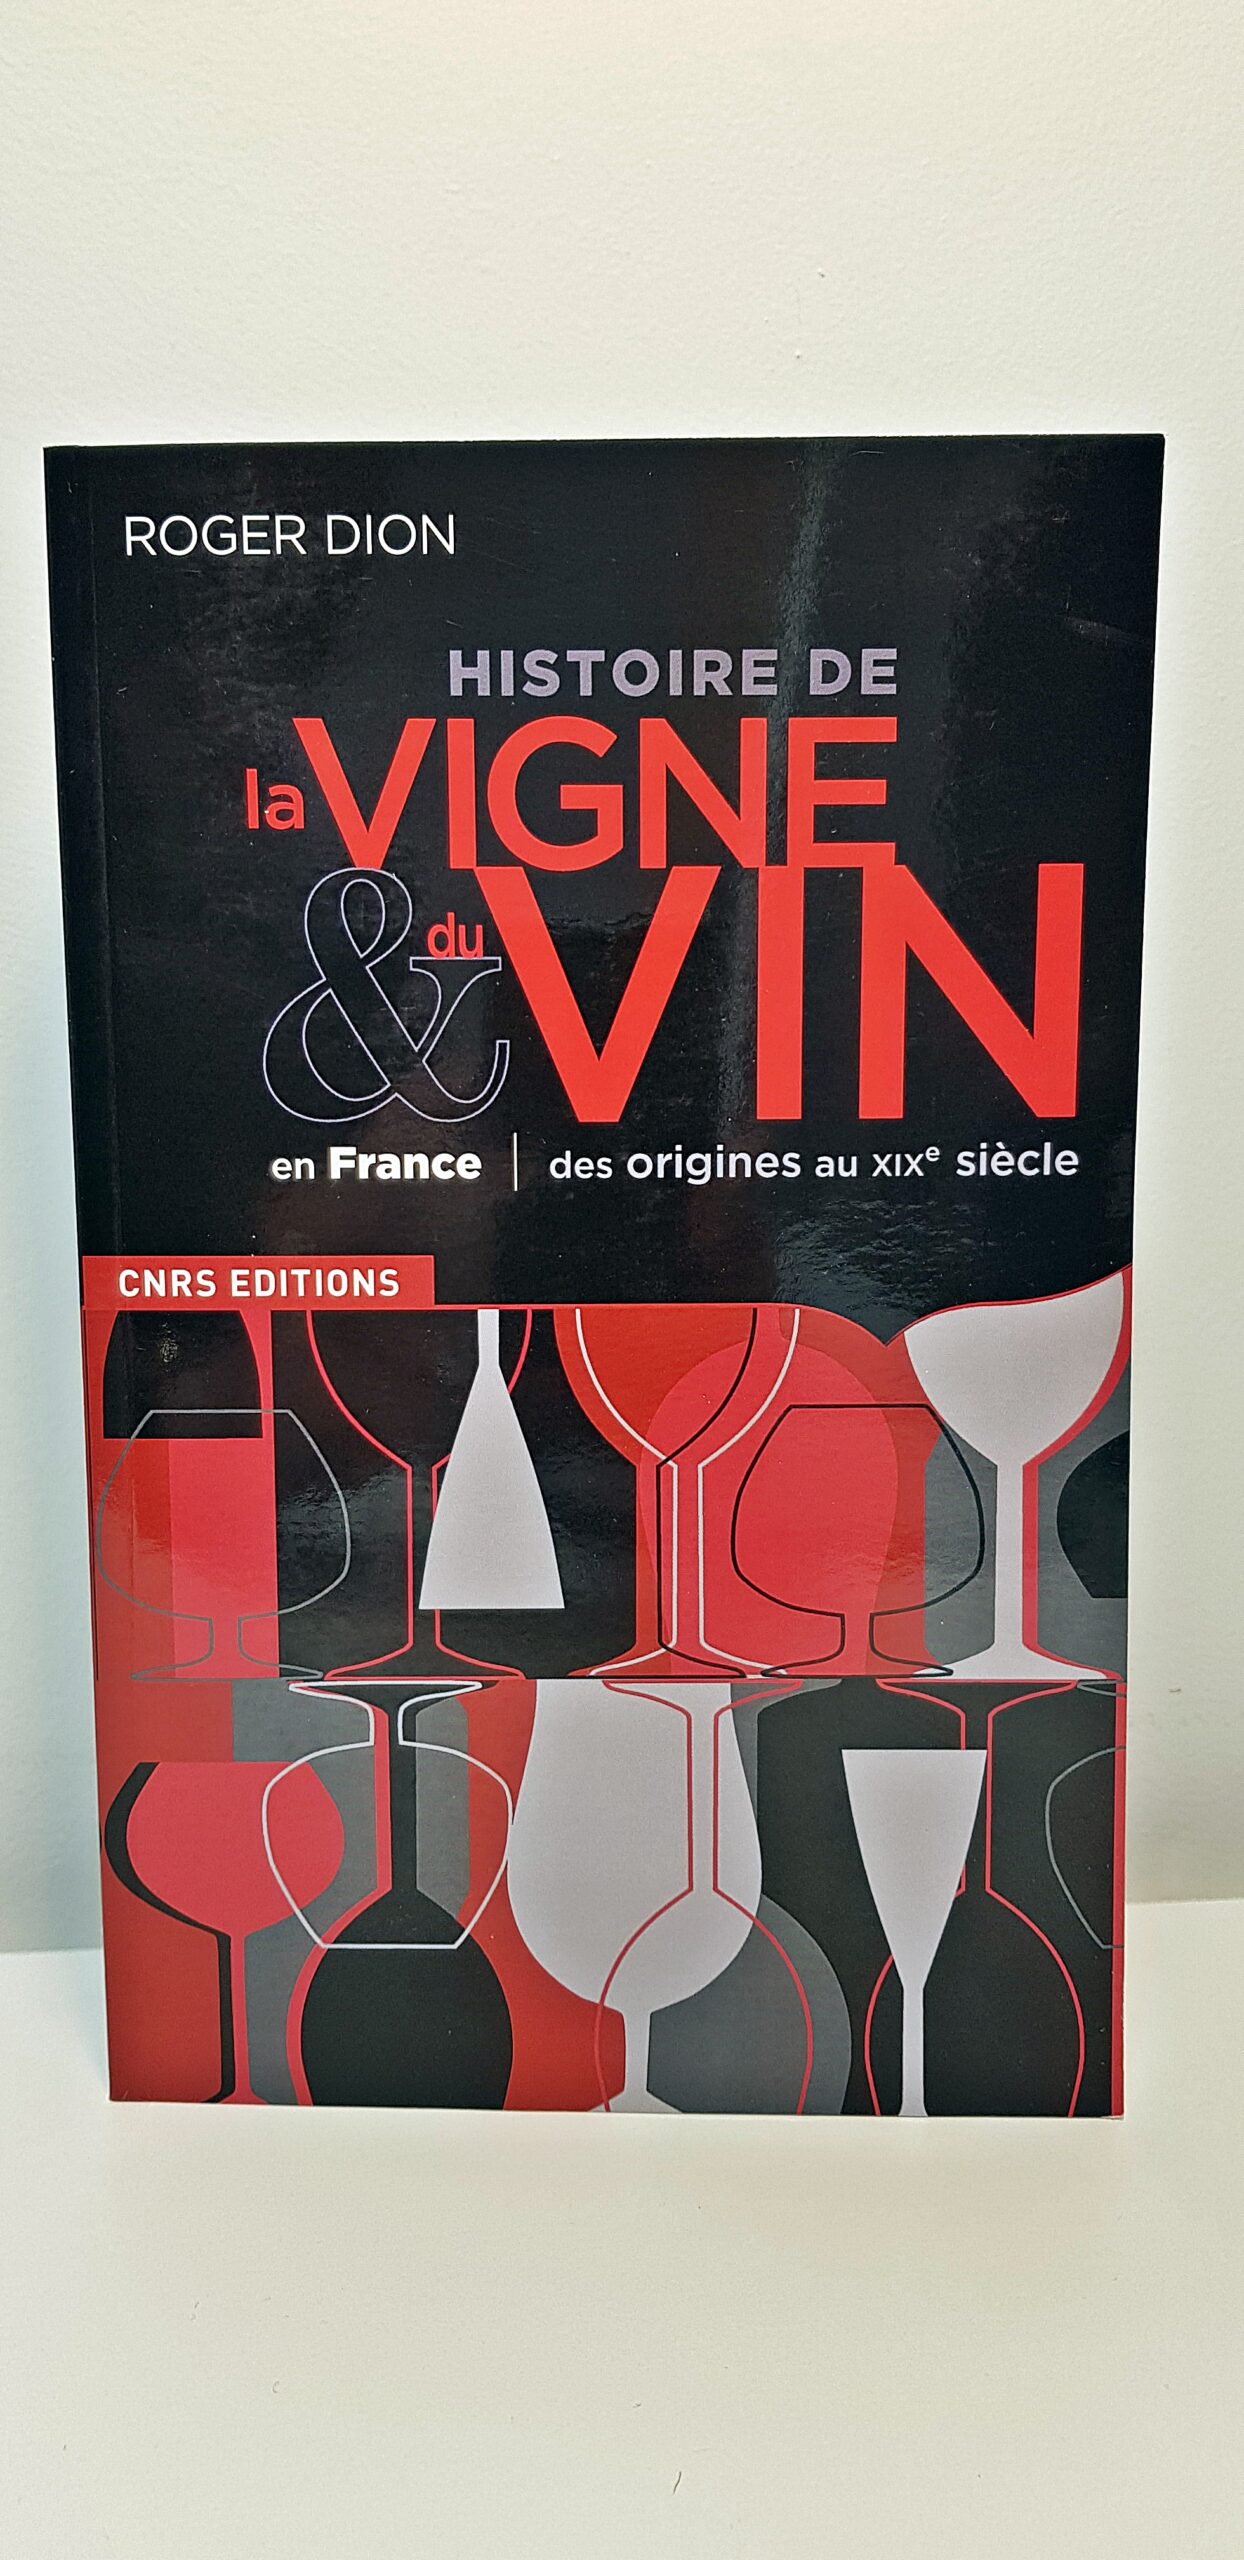 Livre “Histoire de la vigne et vin de France” de Roger Dion